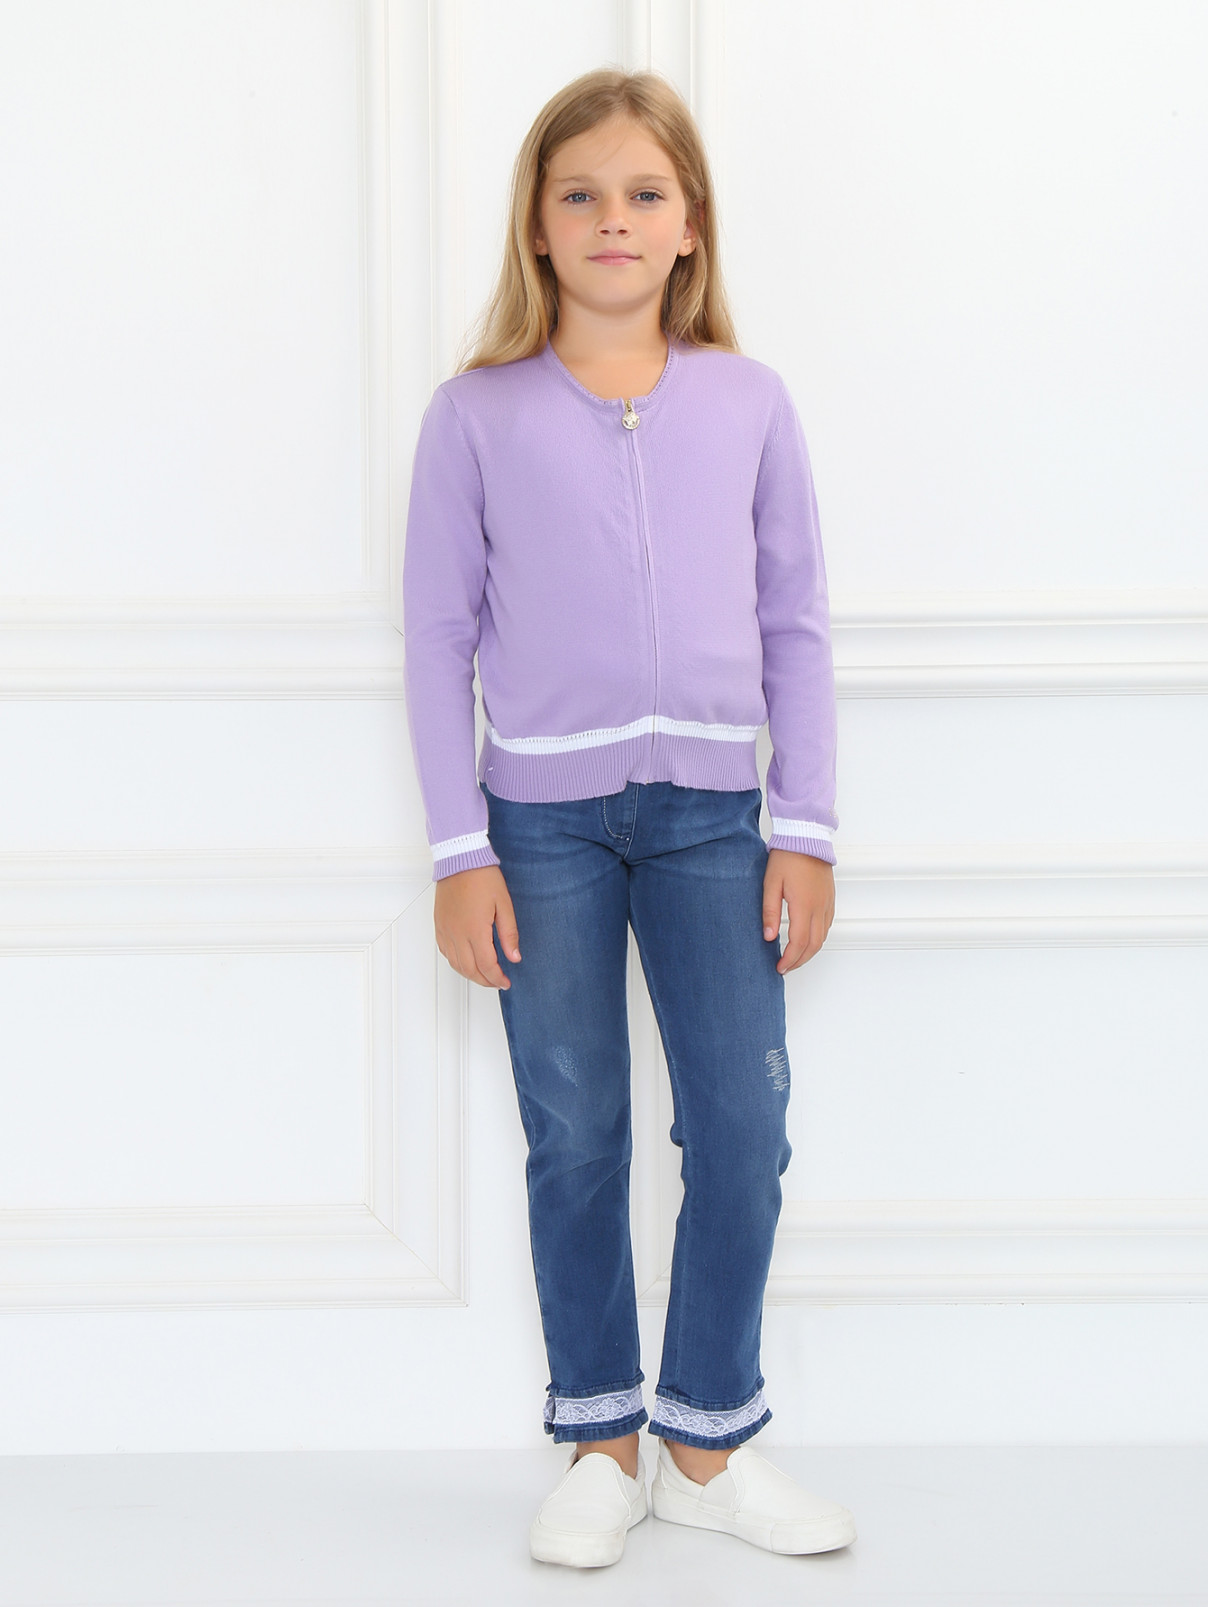 Кардиган из хлопка с контрастными вставками Young Versace  –  Модель Общий вид  – Цвет:  Фиолетовый